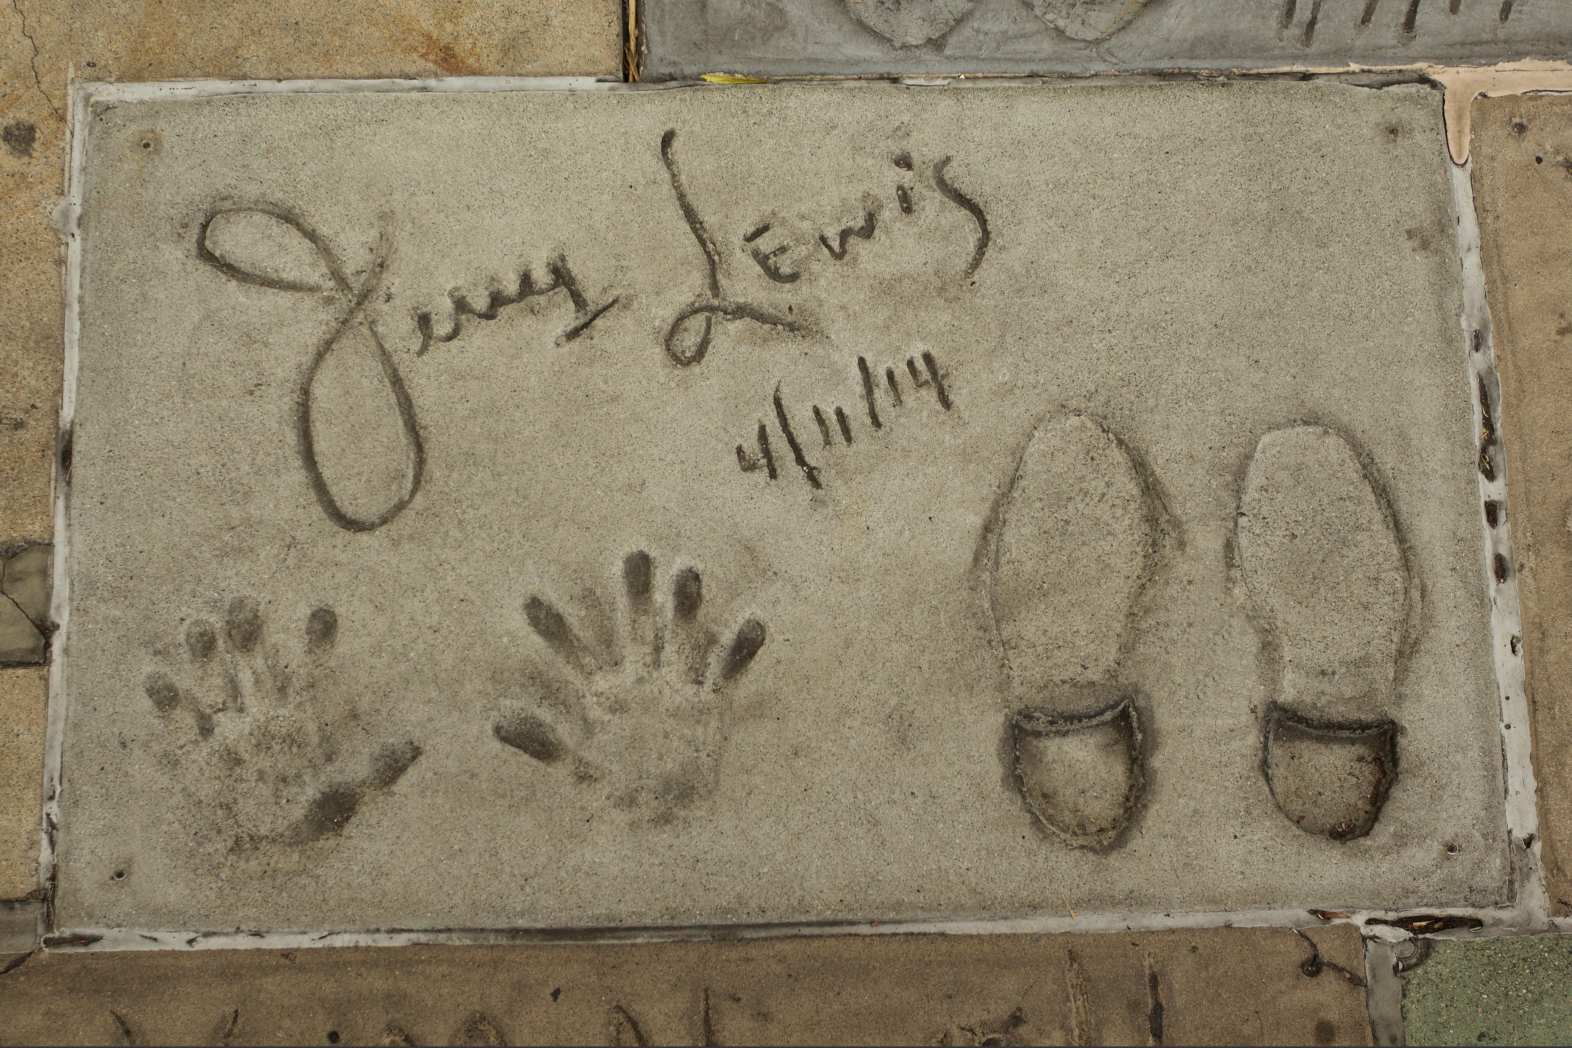 Імправізаваны мемарыял з'явіўся на галівудскай Алеі славы ў Лос-Анджэлесе пасля смерці коміка, акцёра і легендарнага артыста Джэры Льюіса вакол адбіткаў рук і ног, калі ён памёр у 2017 годзе.